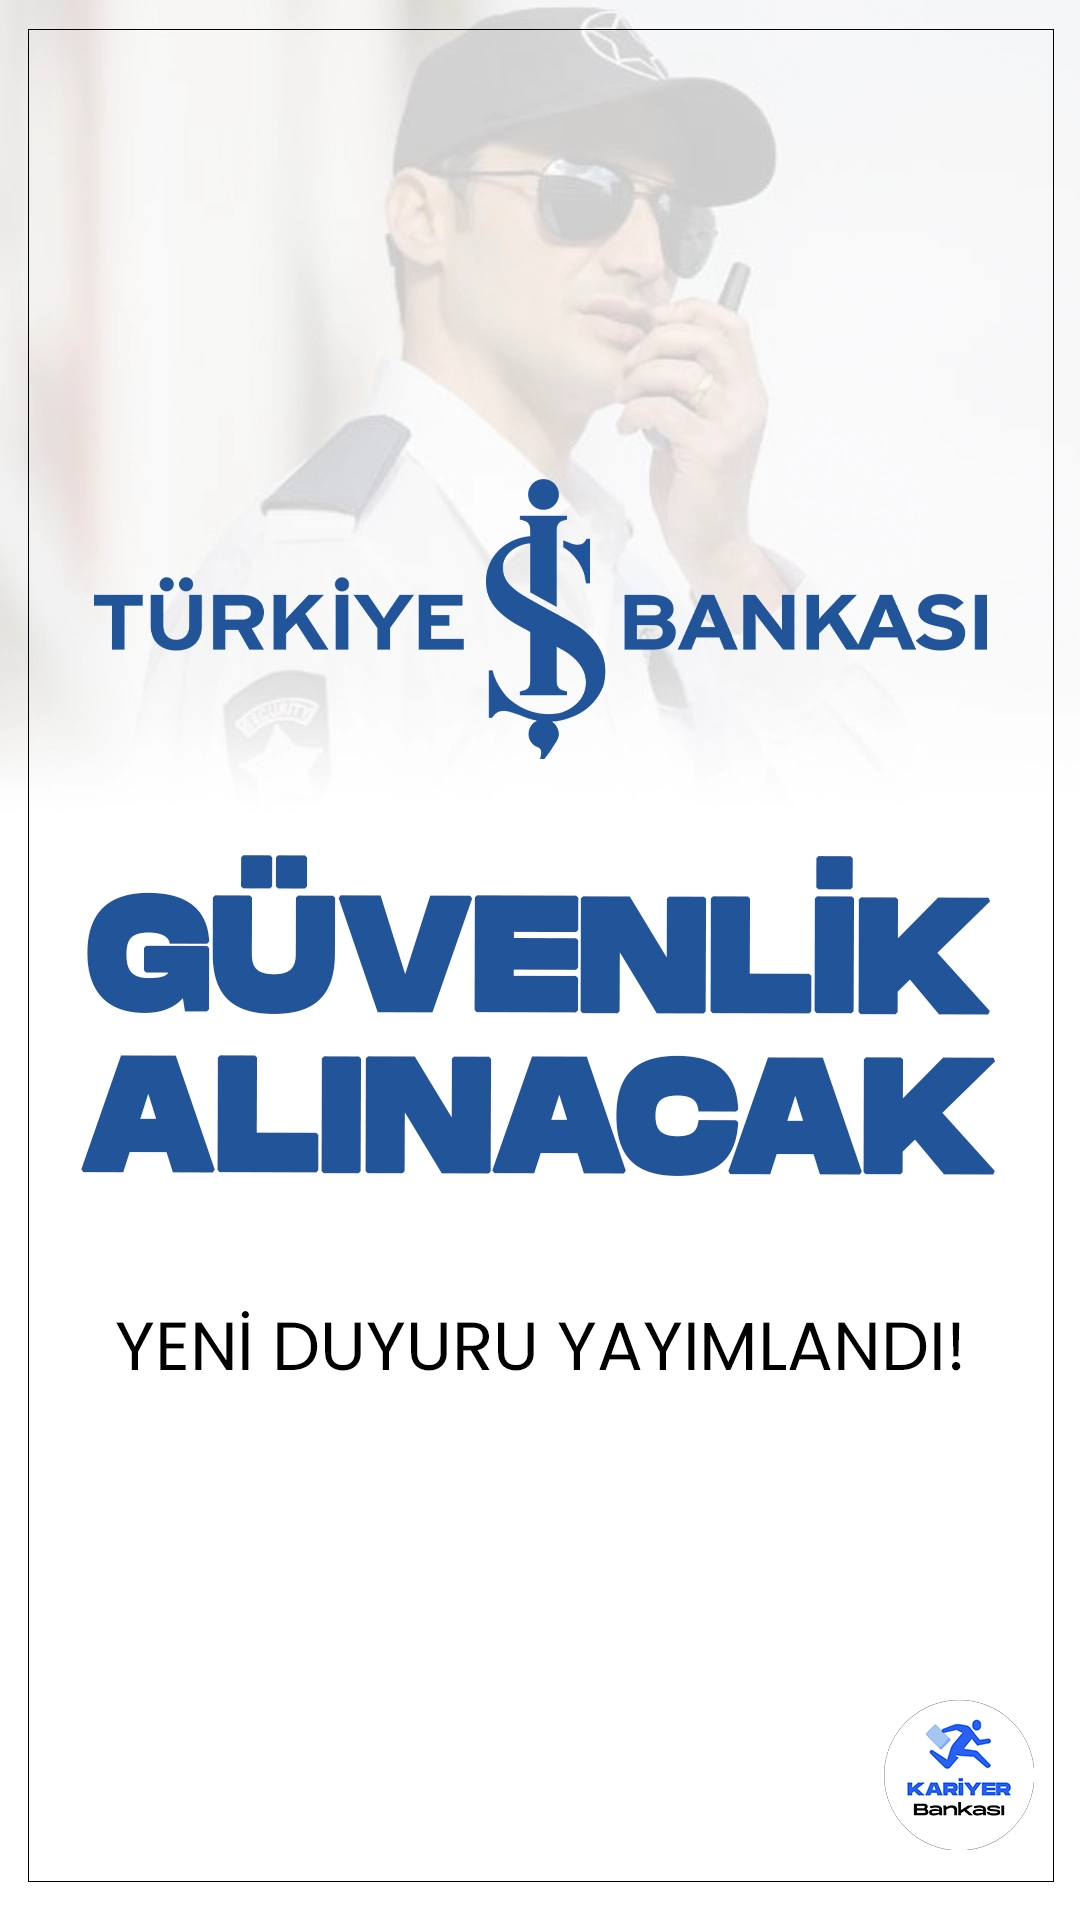 İş Bankası Güvenlik Görevlisi Alımı Duyurusu Yayımlandı.Türkiye İş Bankası, İstanbul'da görevlendirilmek üzere Özel Güvenlik Görevlisi alımı yapacak. Bu pozisyonda çalışacak personel, şubelerde, genel müdürlük ve bölge müdürlüğü binalarında silahlı güvenlik görevini yerine getirecek. Başvurular 2 Ağustos 2024 tarihinde sona erecek. Başvuru yapacak adayların belirtilen şartları sağlaması gerekmektedir.